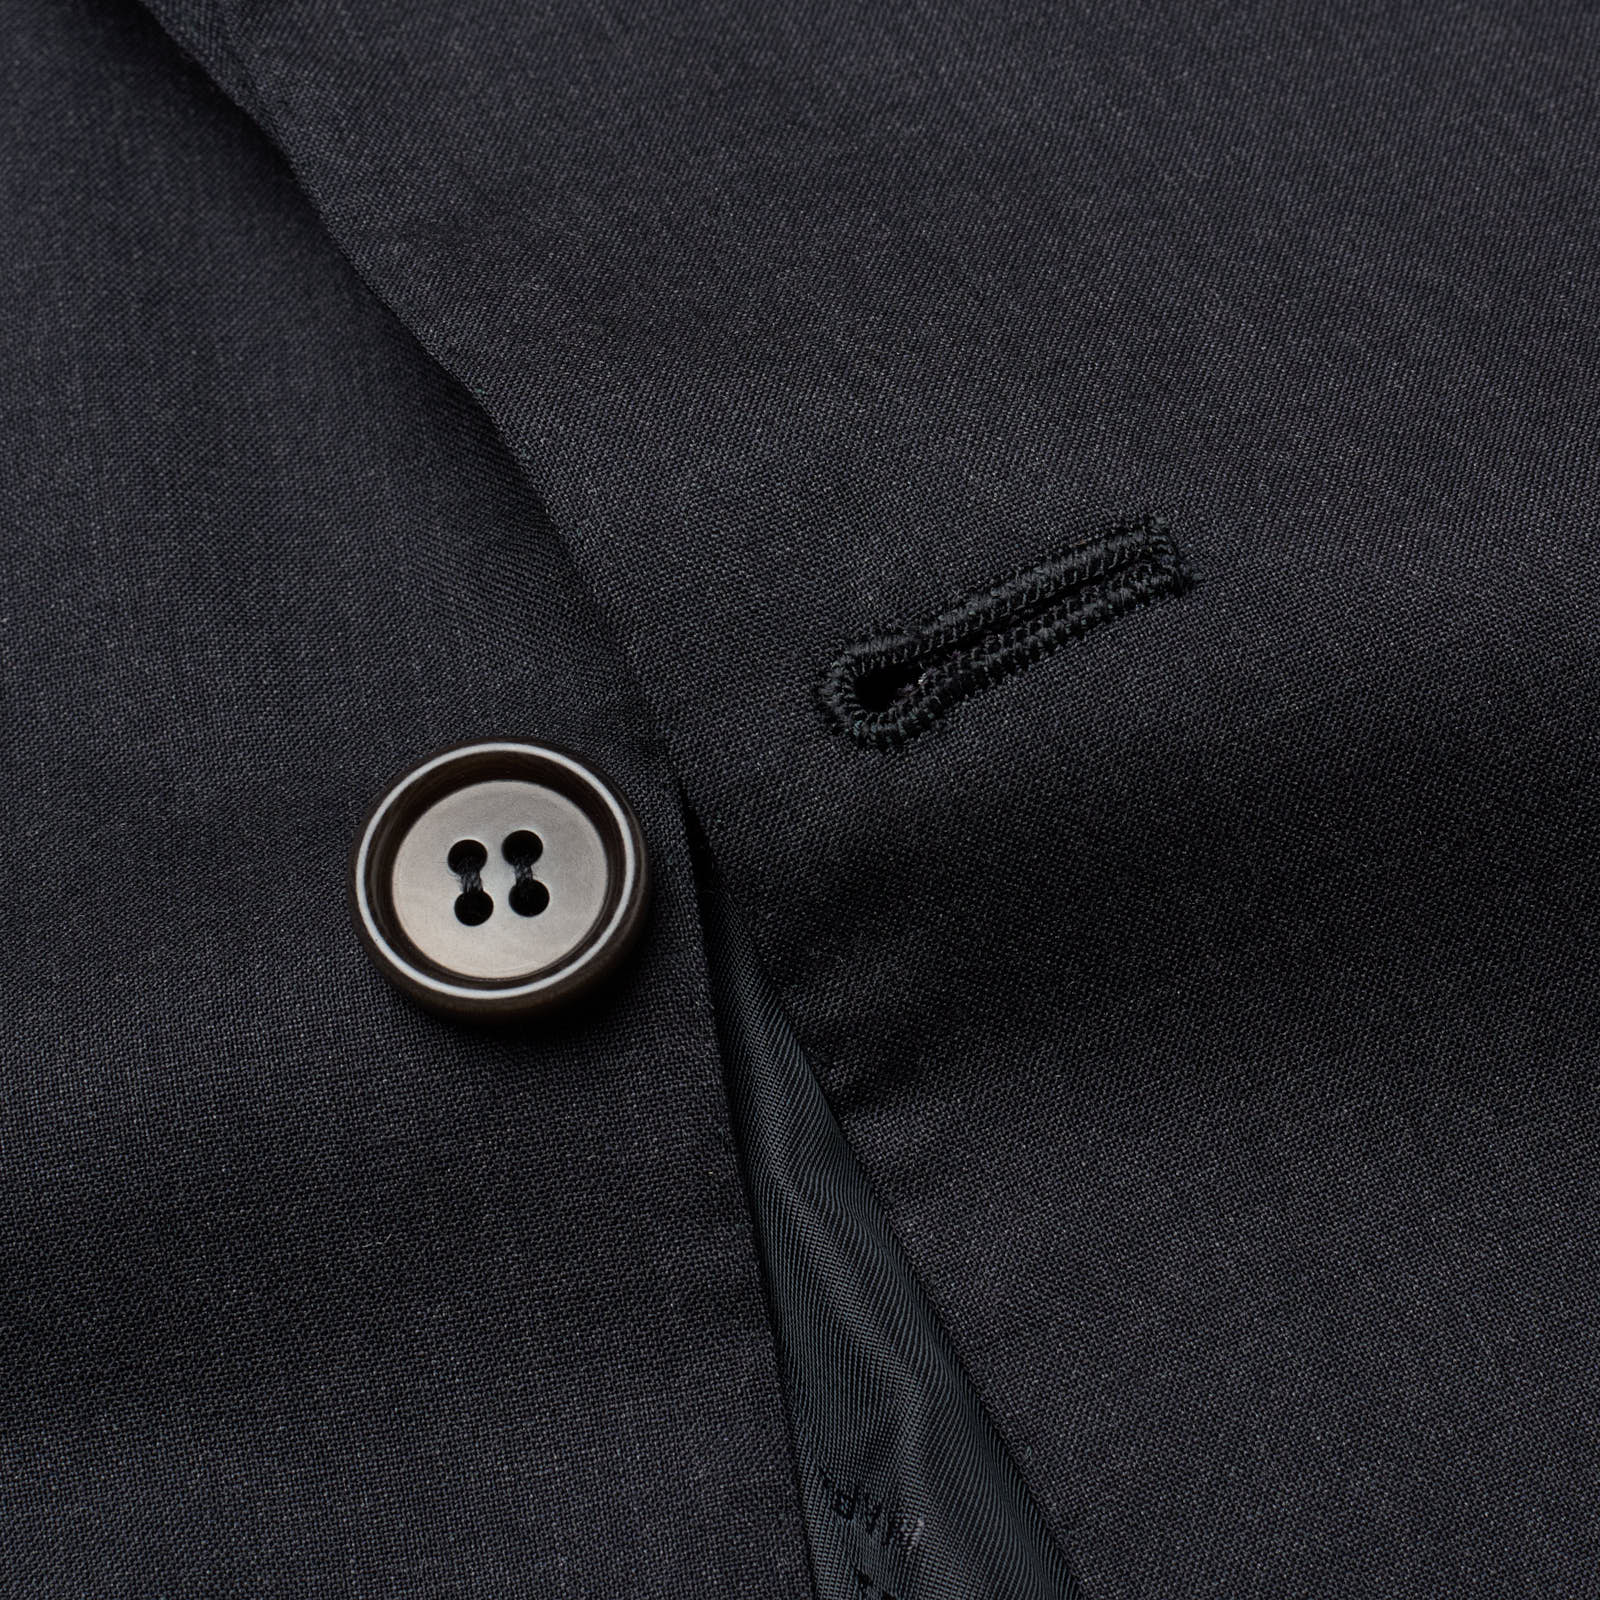 KITON Napoli for VANNUCCI Gray 13.5 Micron Super 190's Suit EU 52 NEW US 42